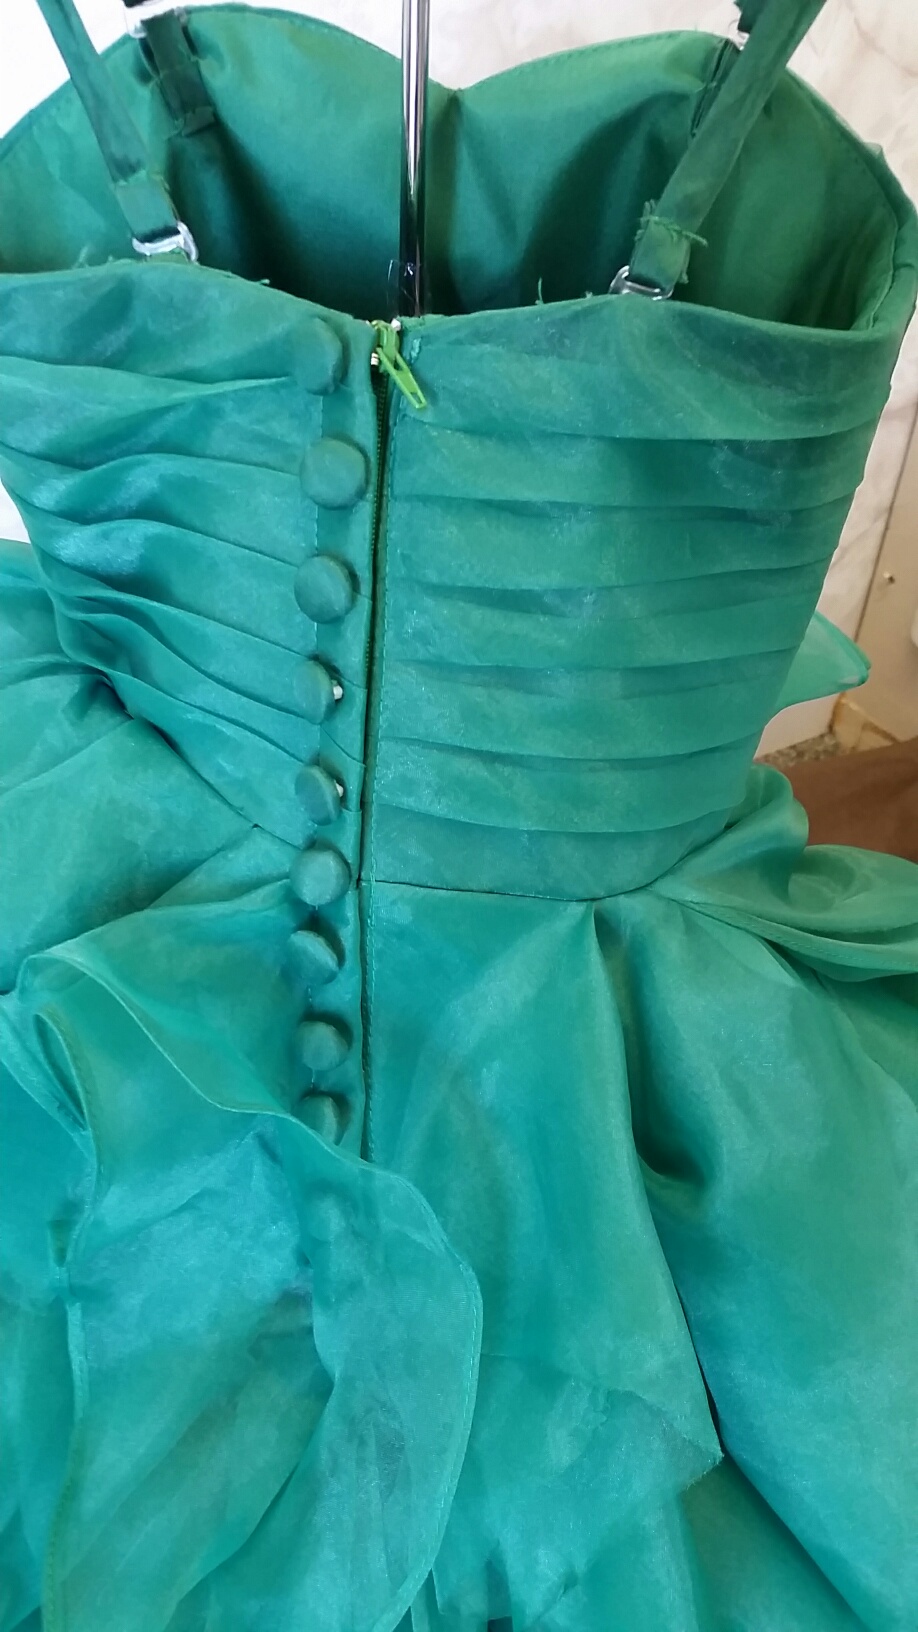 green organza ruffles flower girl dress